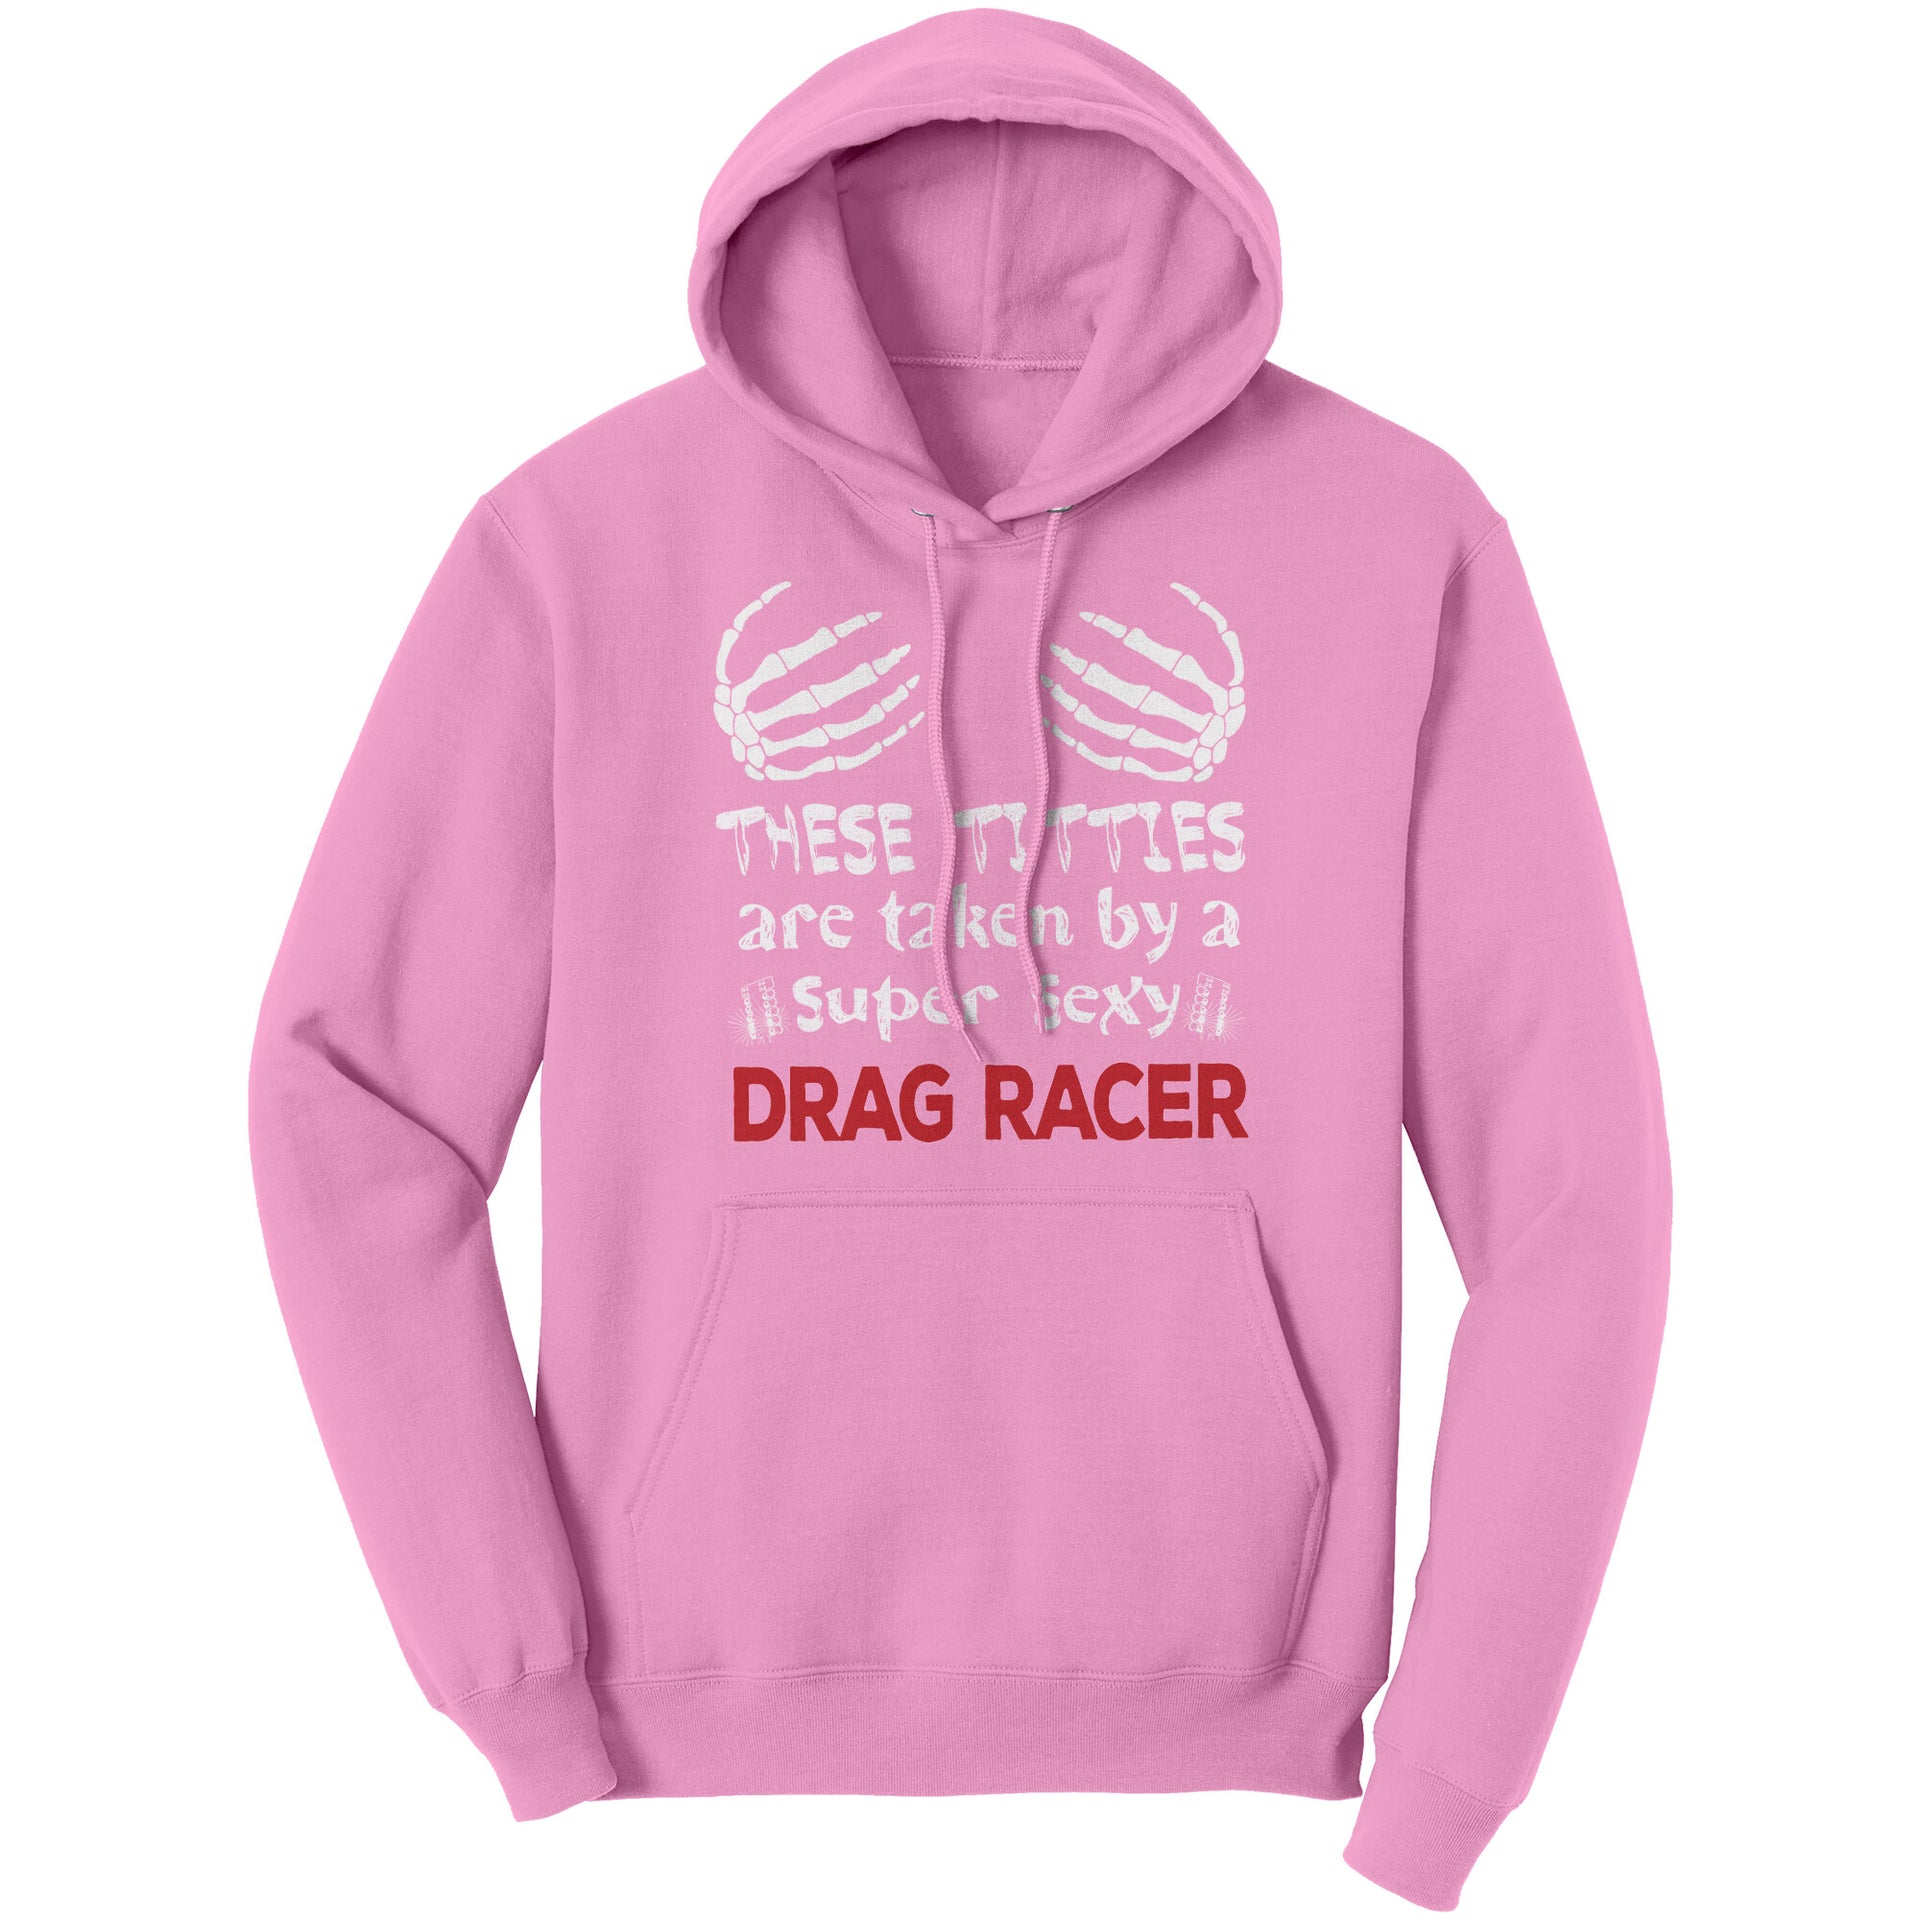 Drag racing women's t-shirts